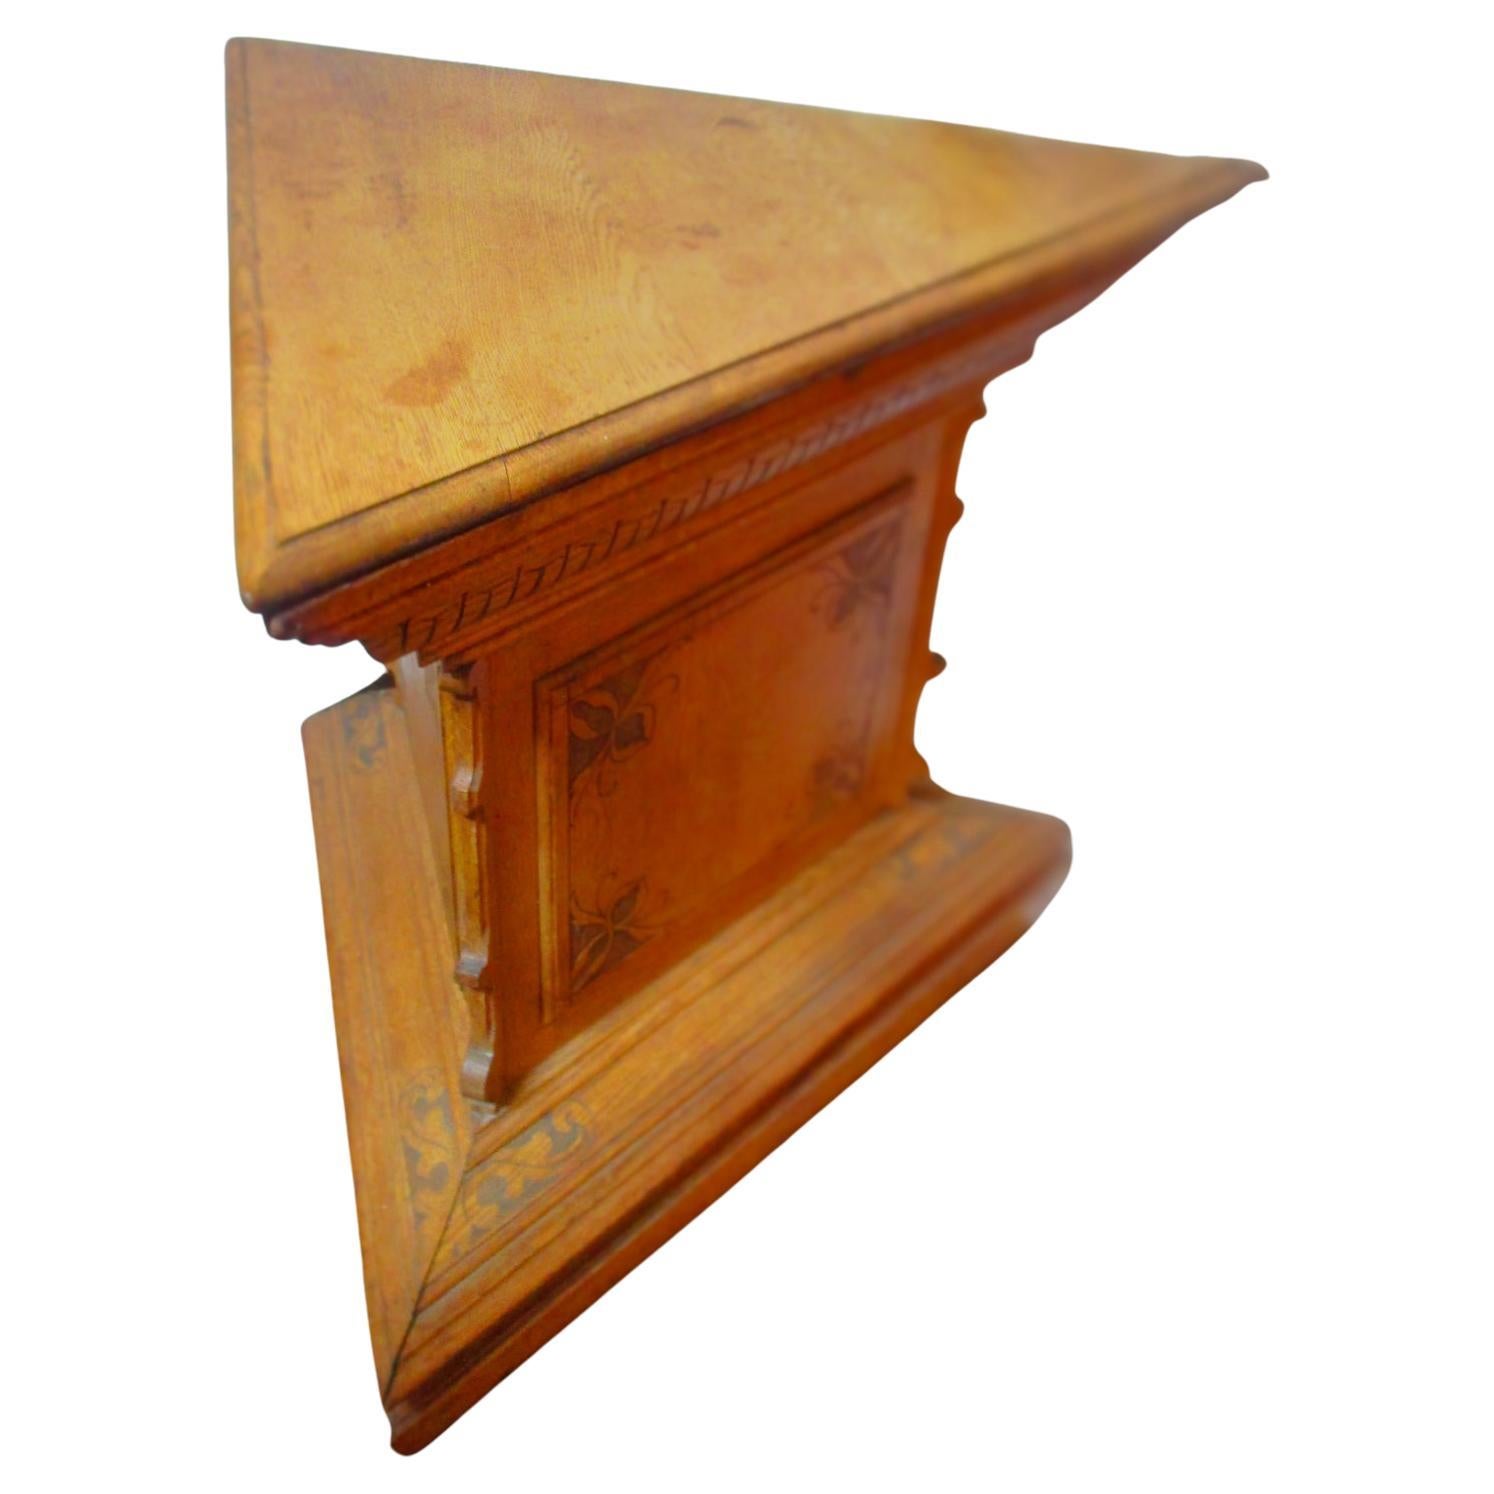 Table autel maonnique triangulaire en chne sculpt du 19e sicle